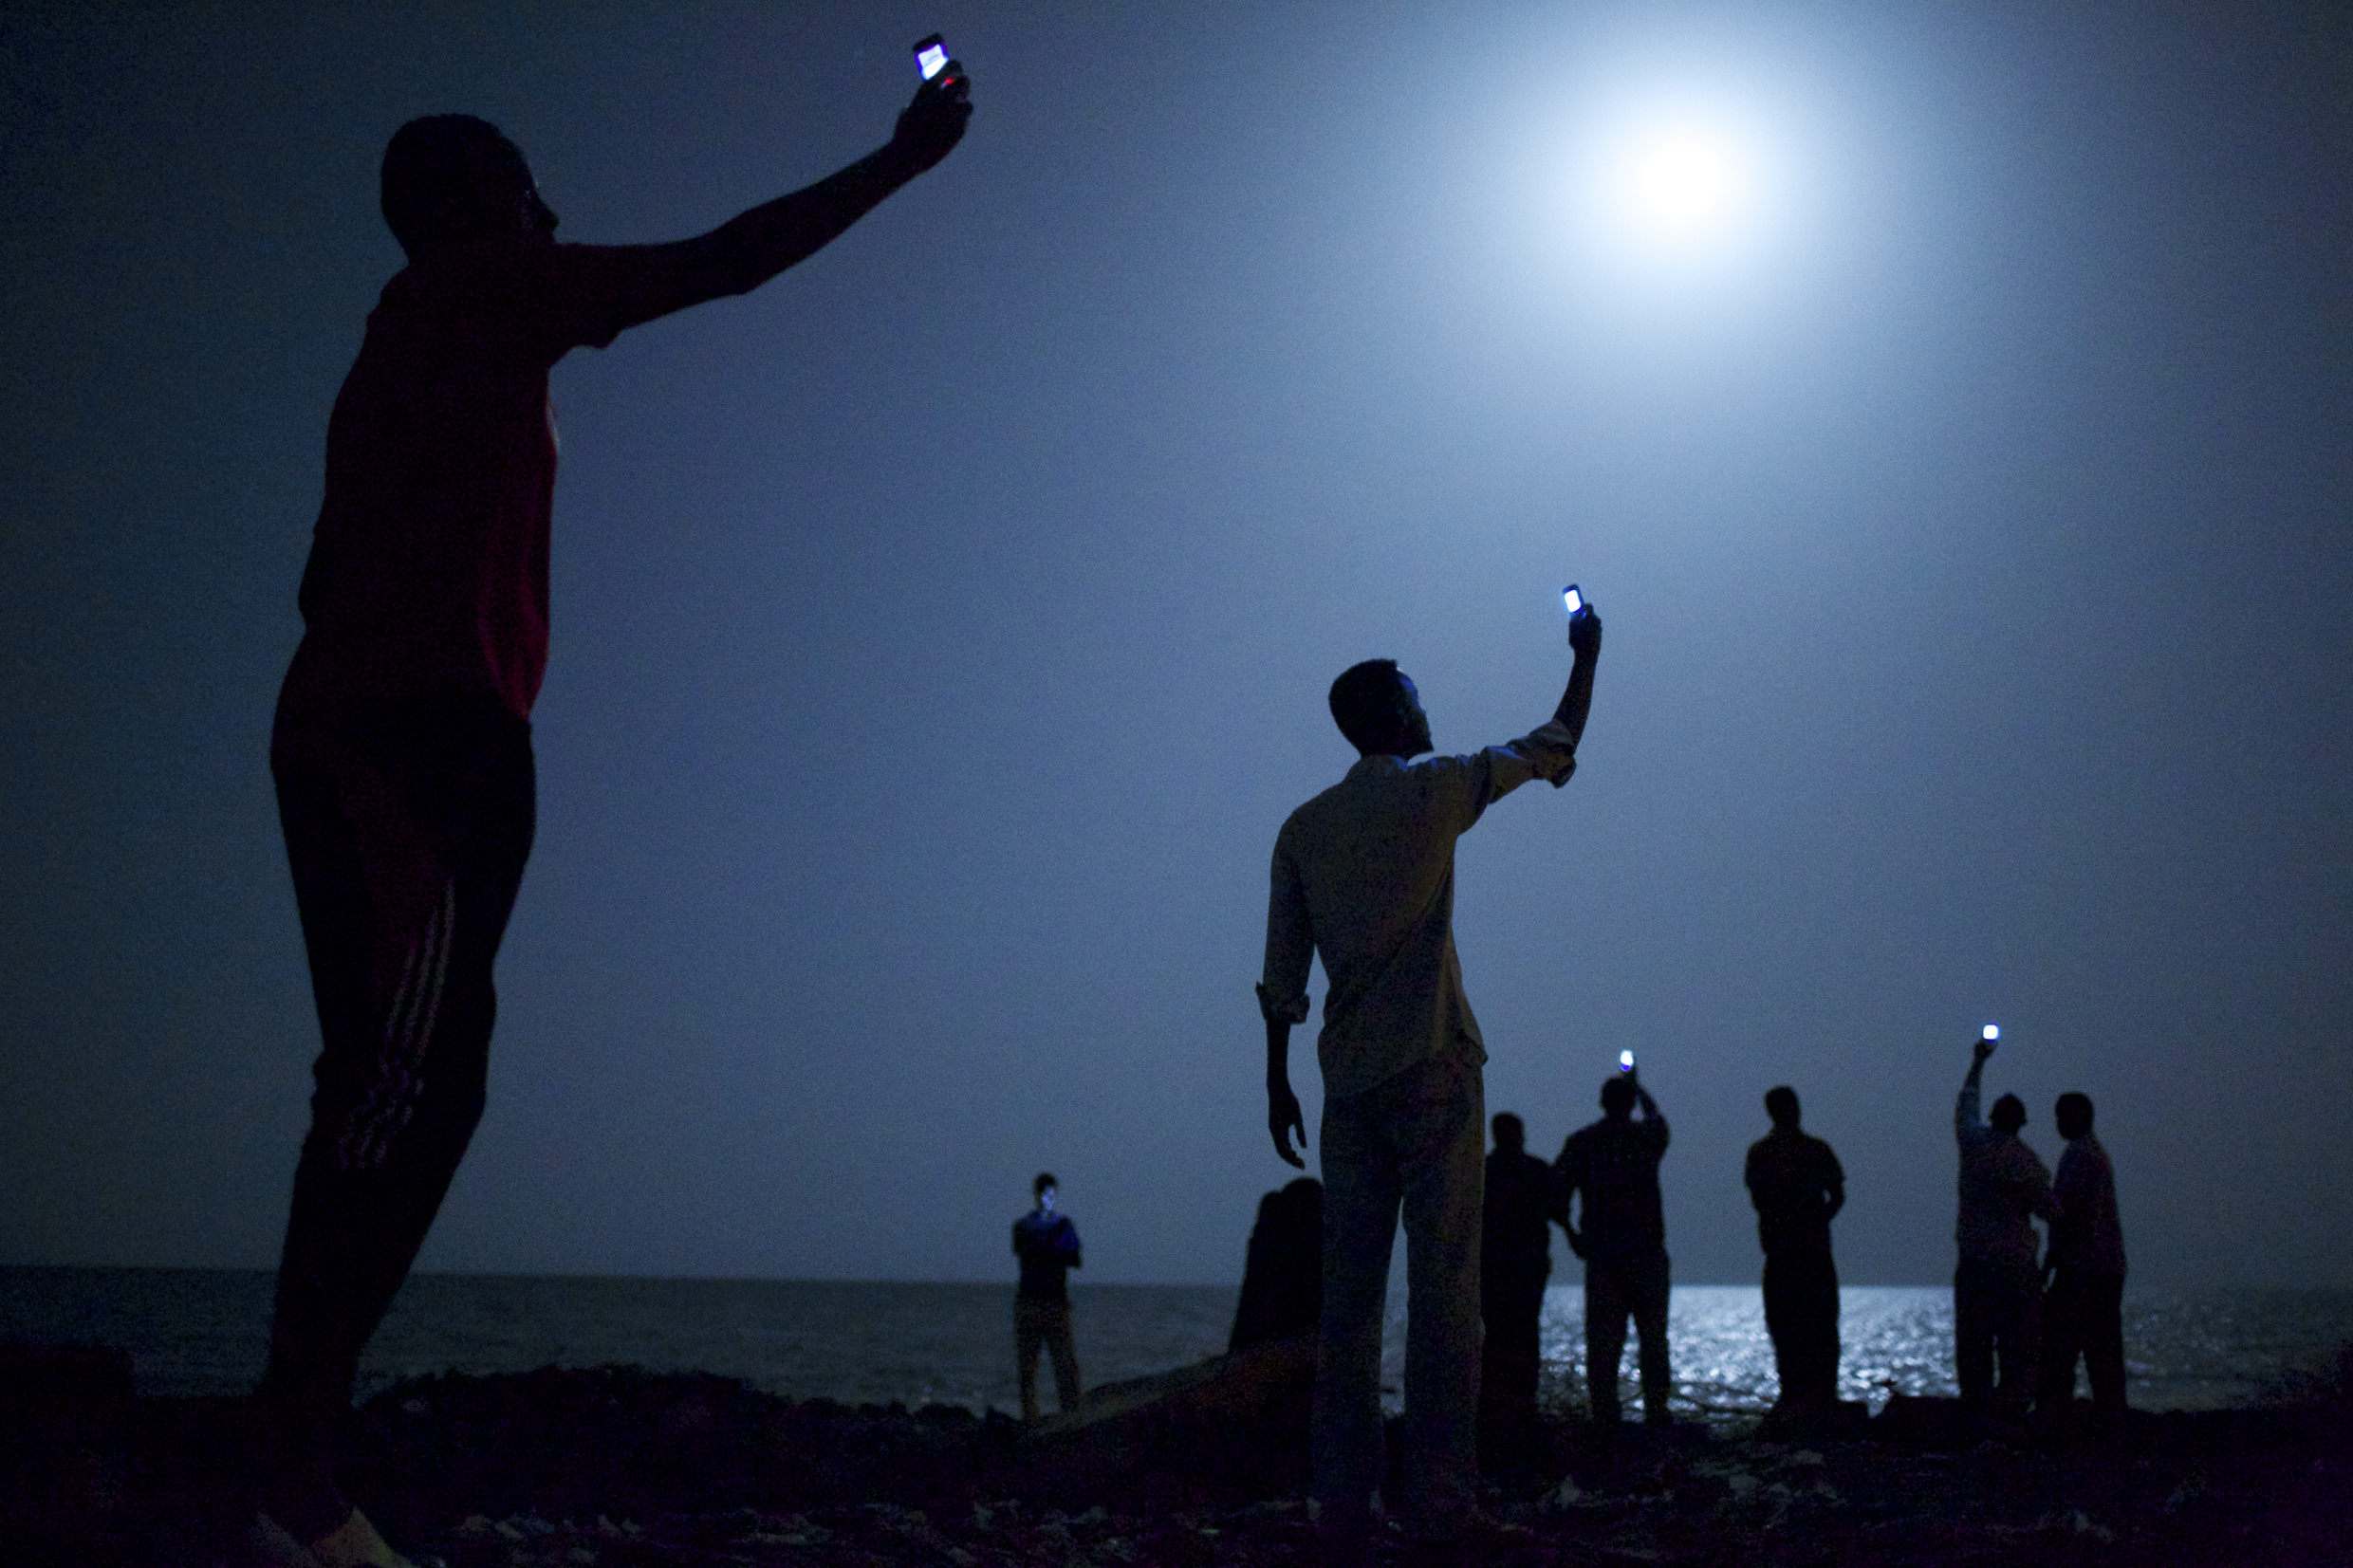 Personen halten nachts ihr Handy in die Luft